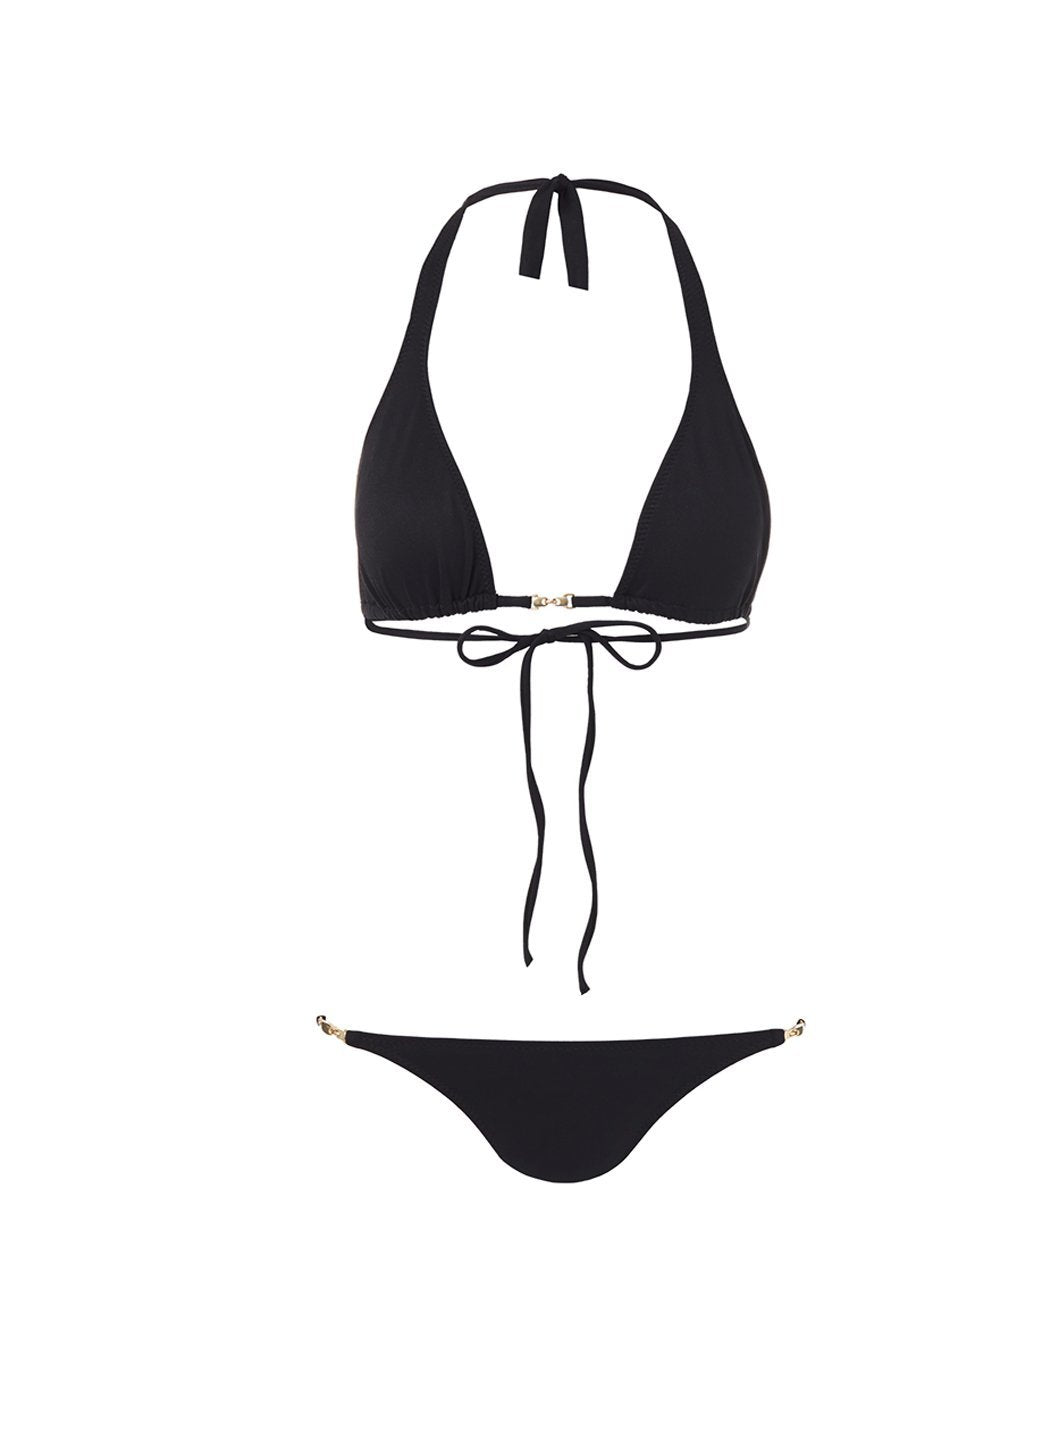 mustique black halterneck goldlink bikini 2019